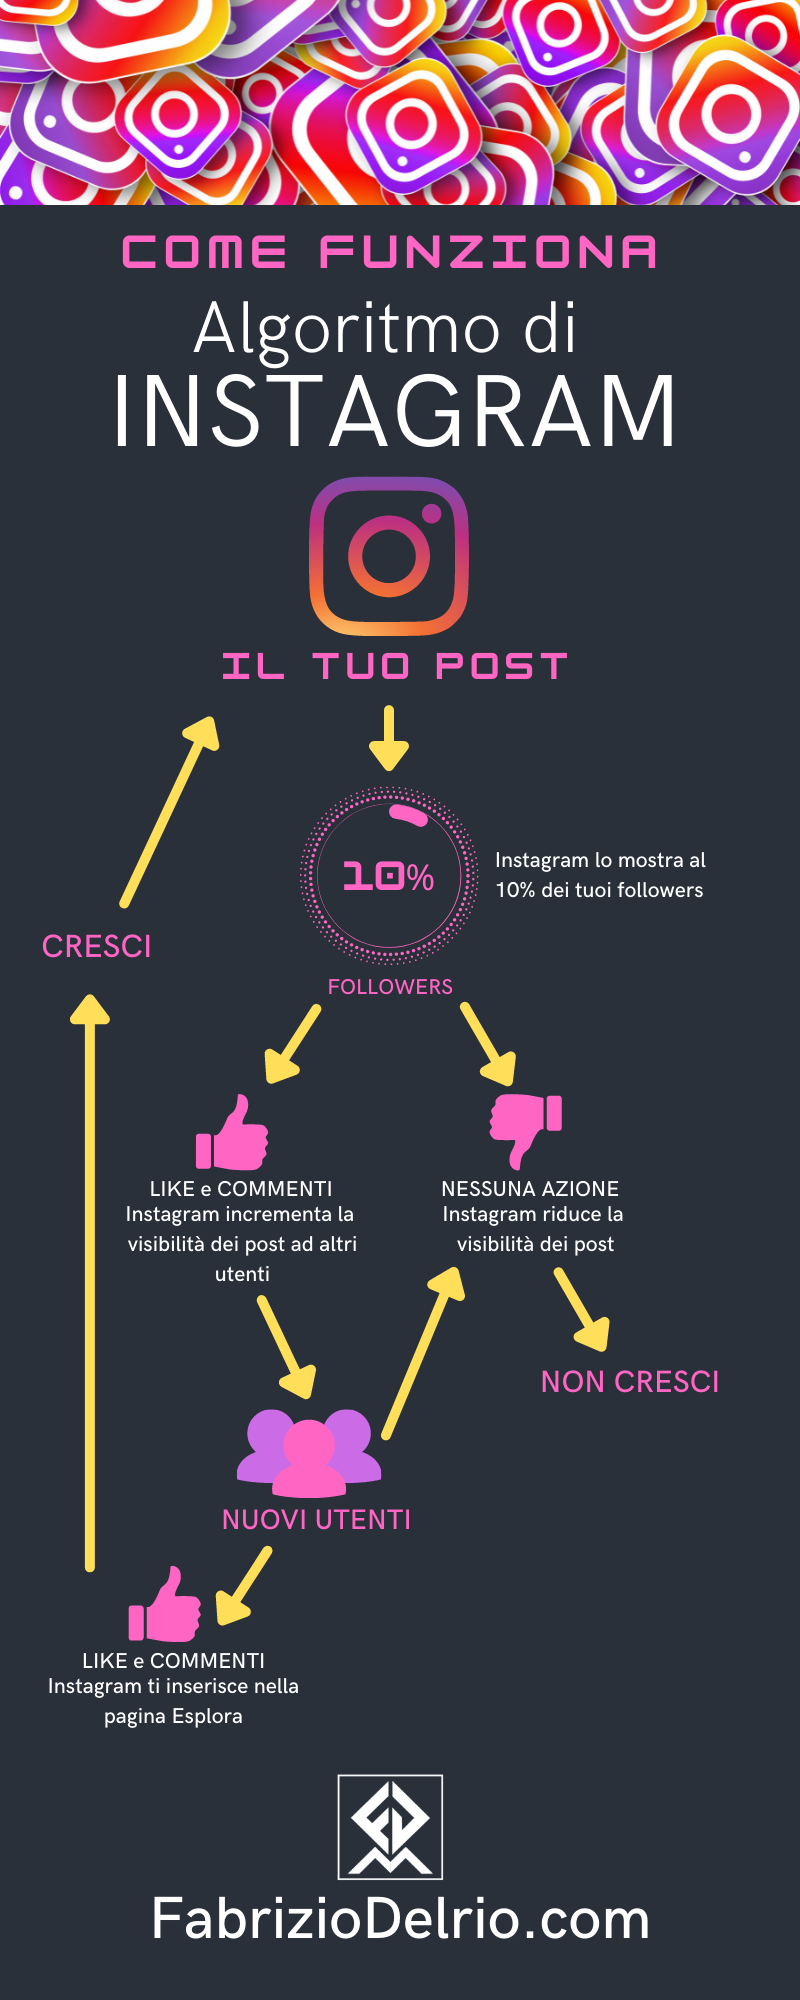 Algoritmo-Instagram-infografica.png